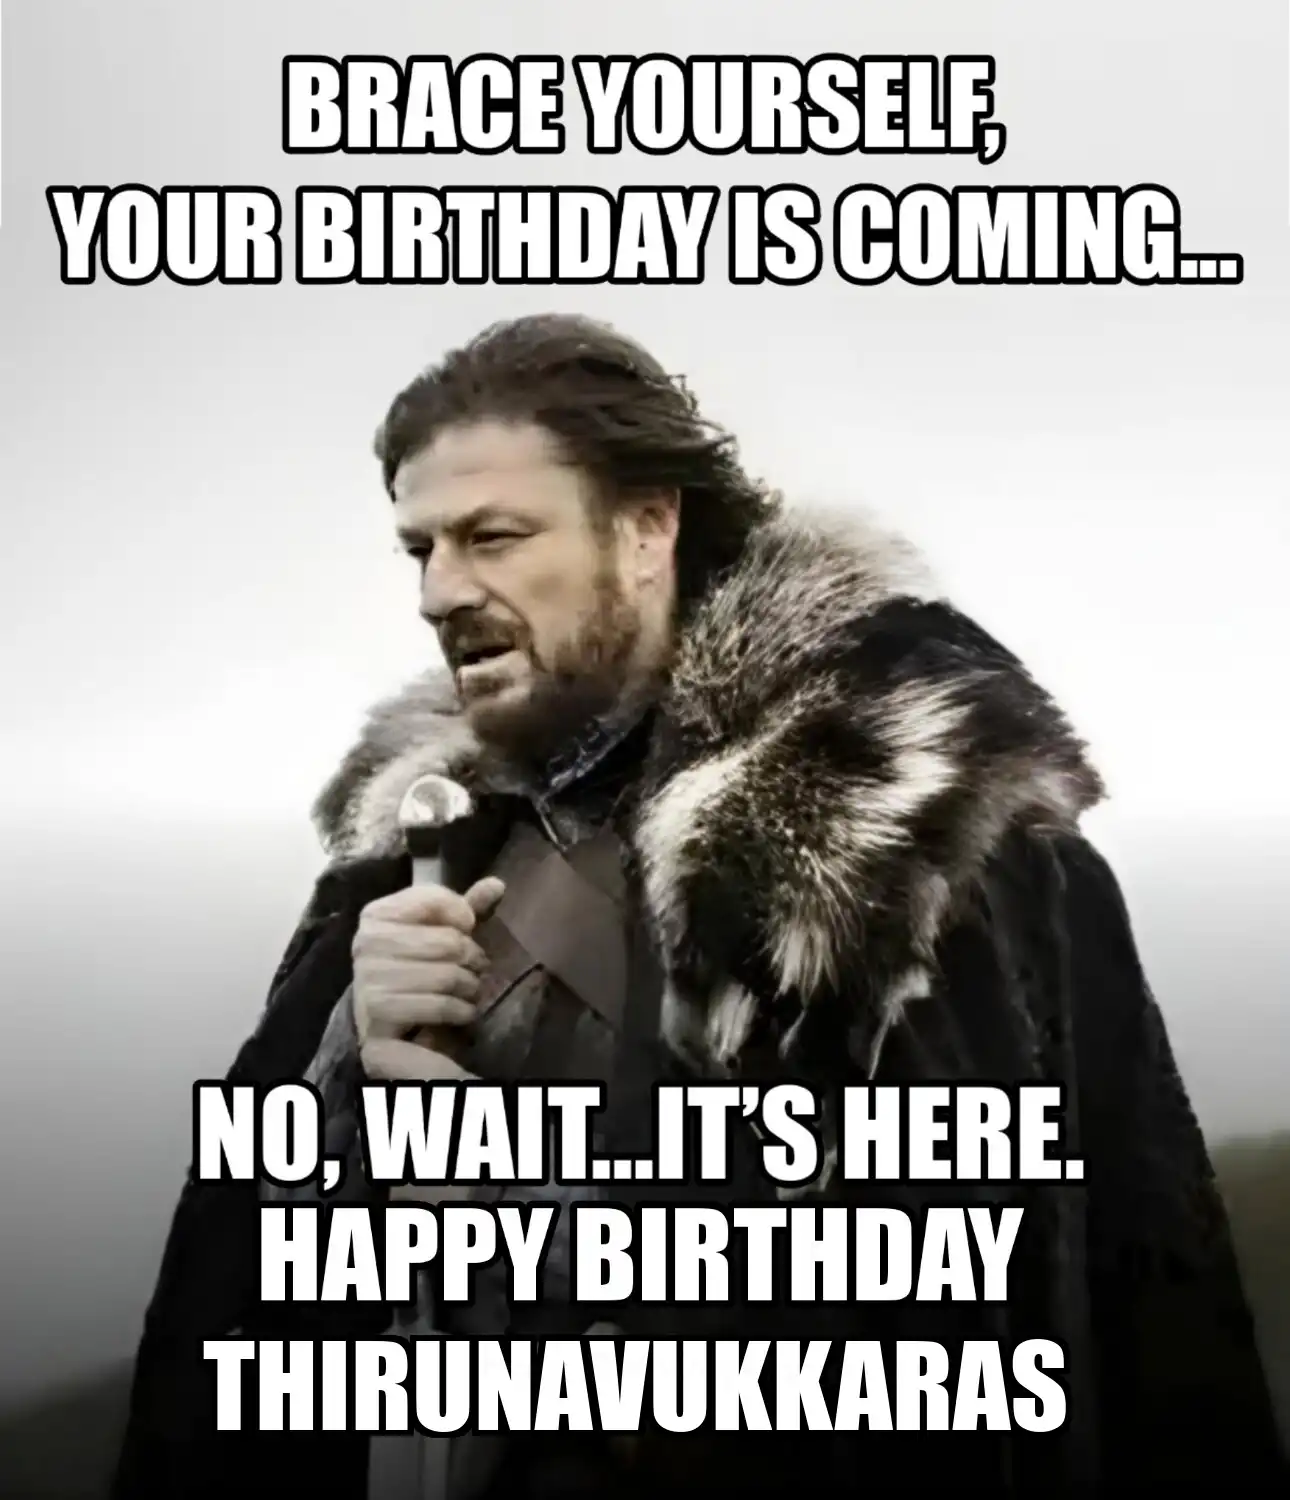 Happy Birthday Thirunavukkaras Brace Yourself Your Birthday Is Coming Meme